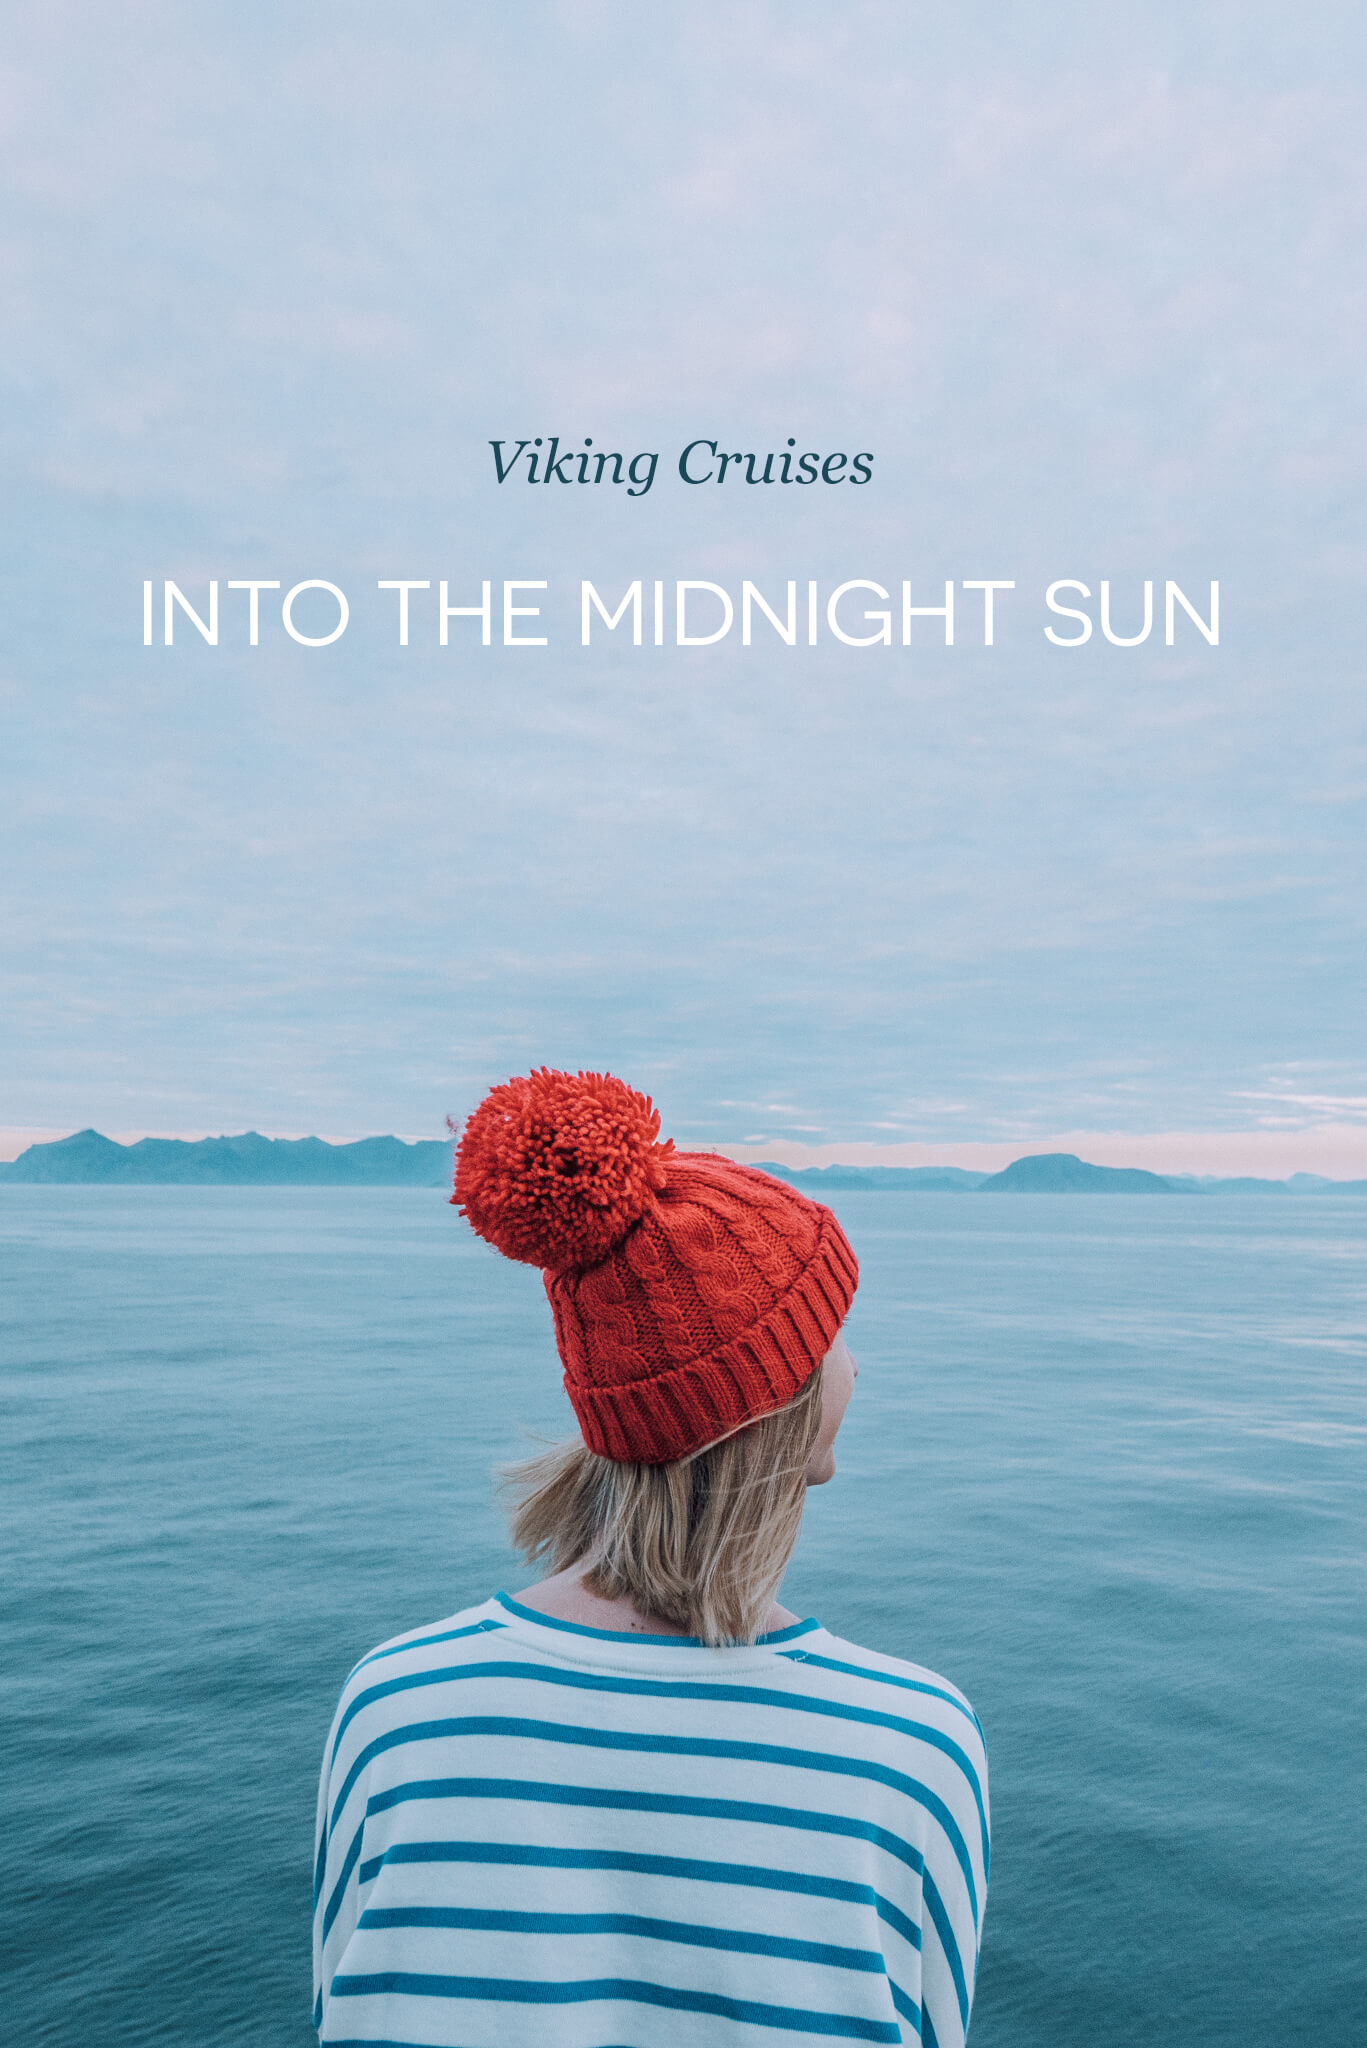 Norway Midnight Sun Cruise, Follow the Midnight Sun